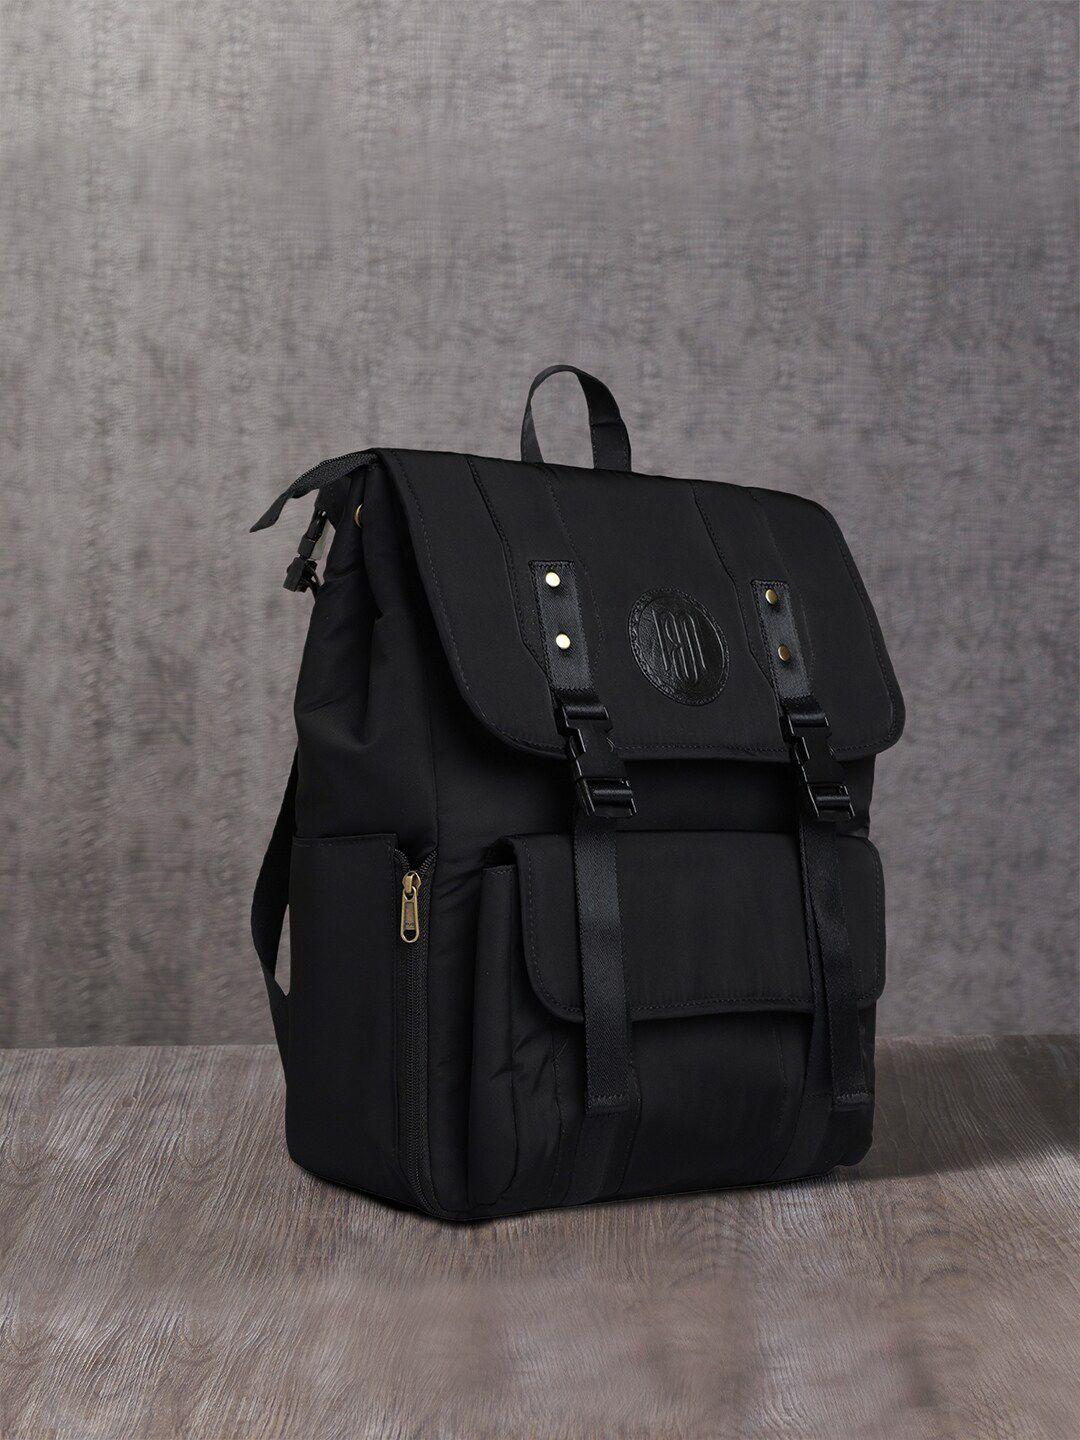 mona b large padded ergonomic backpack